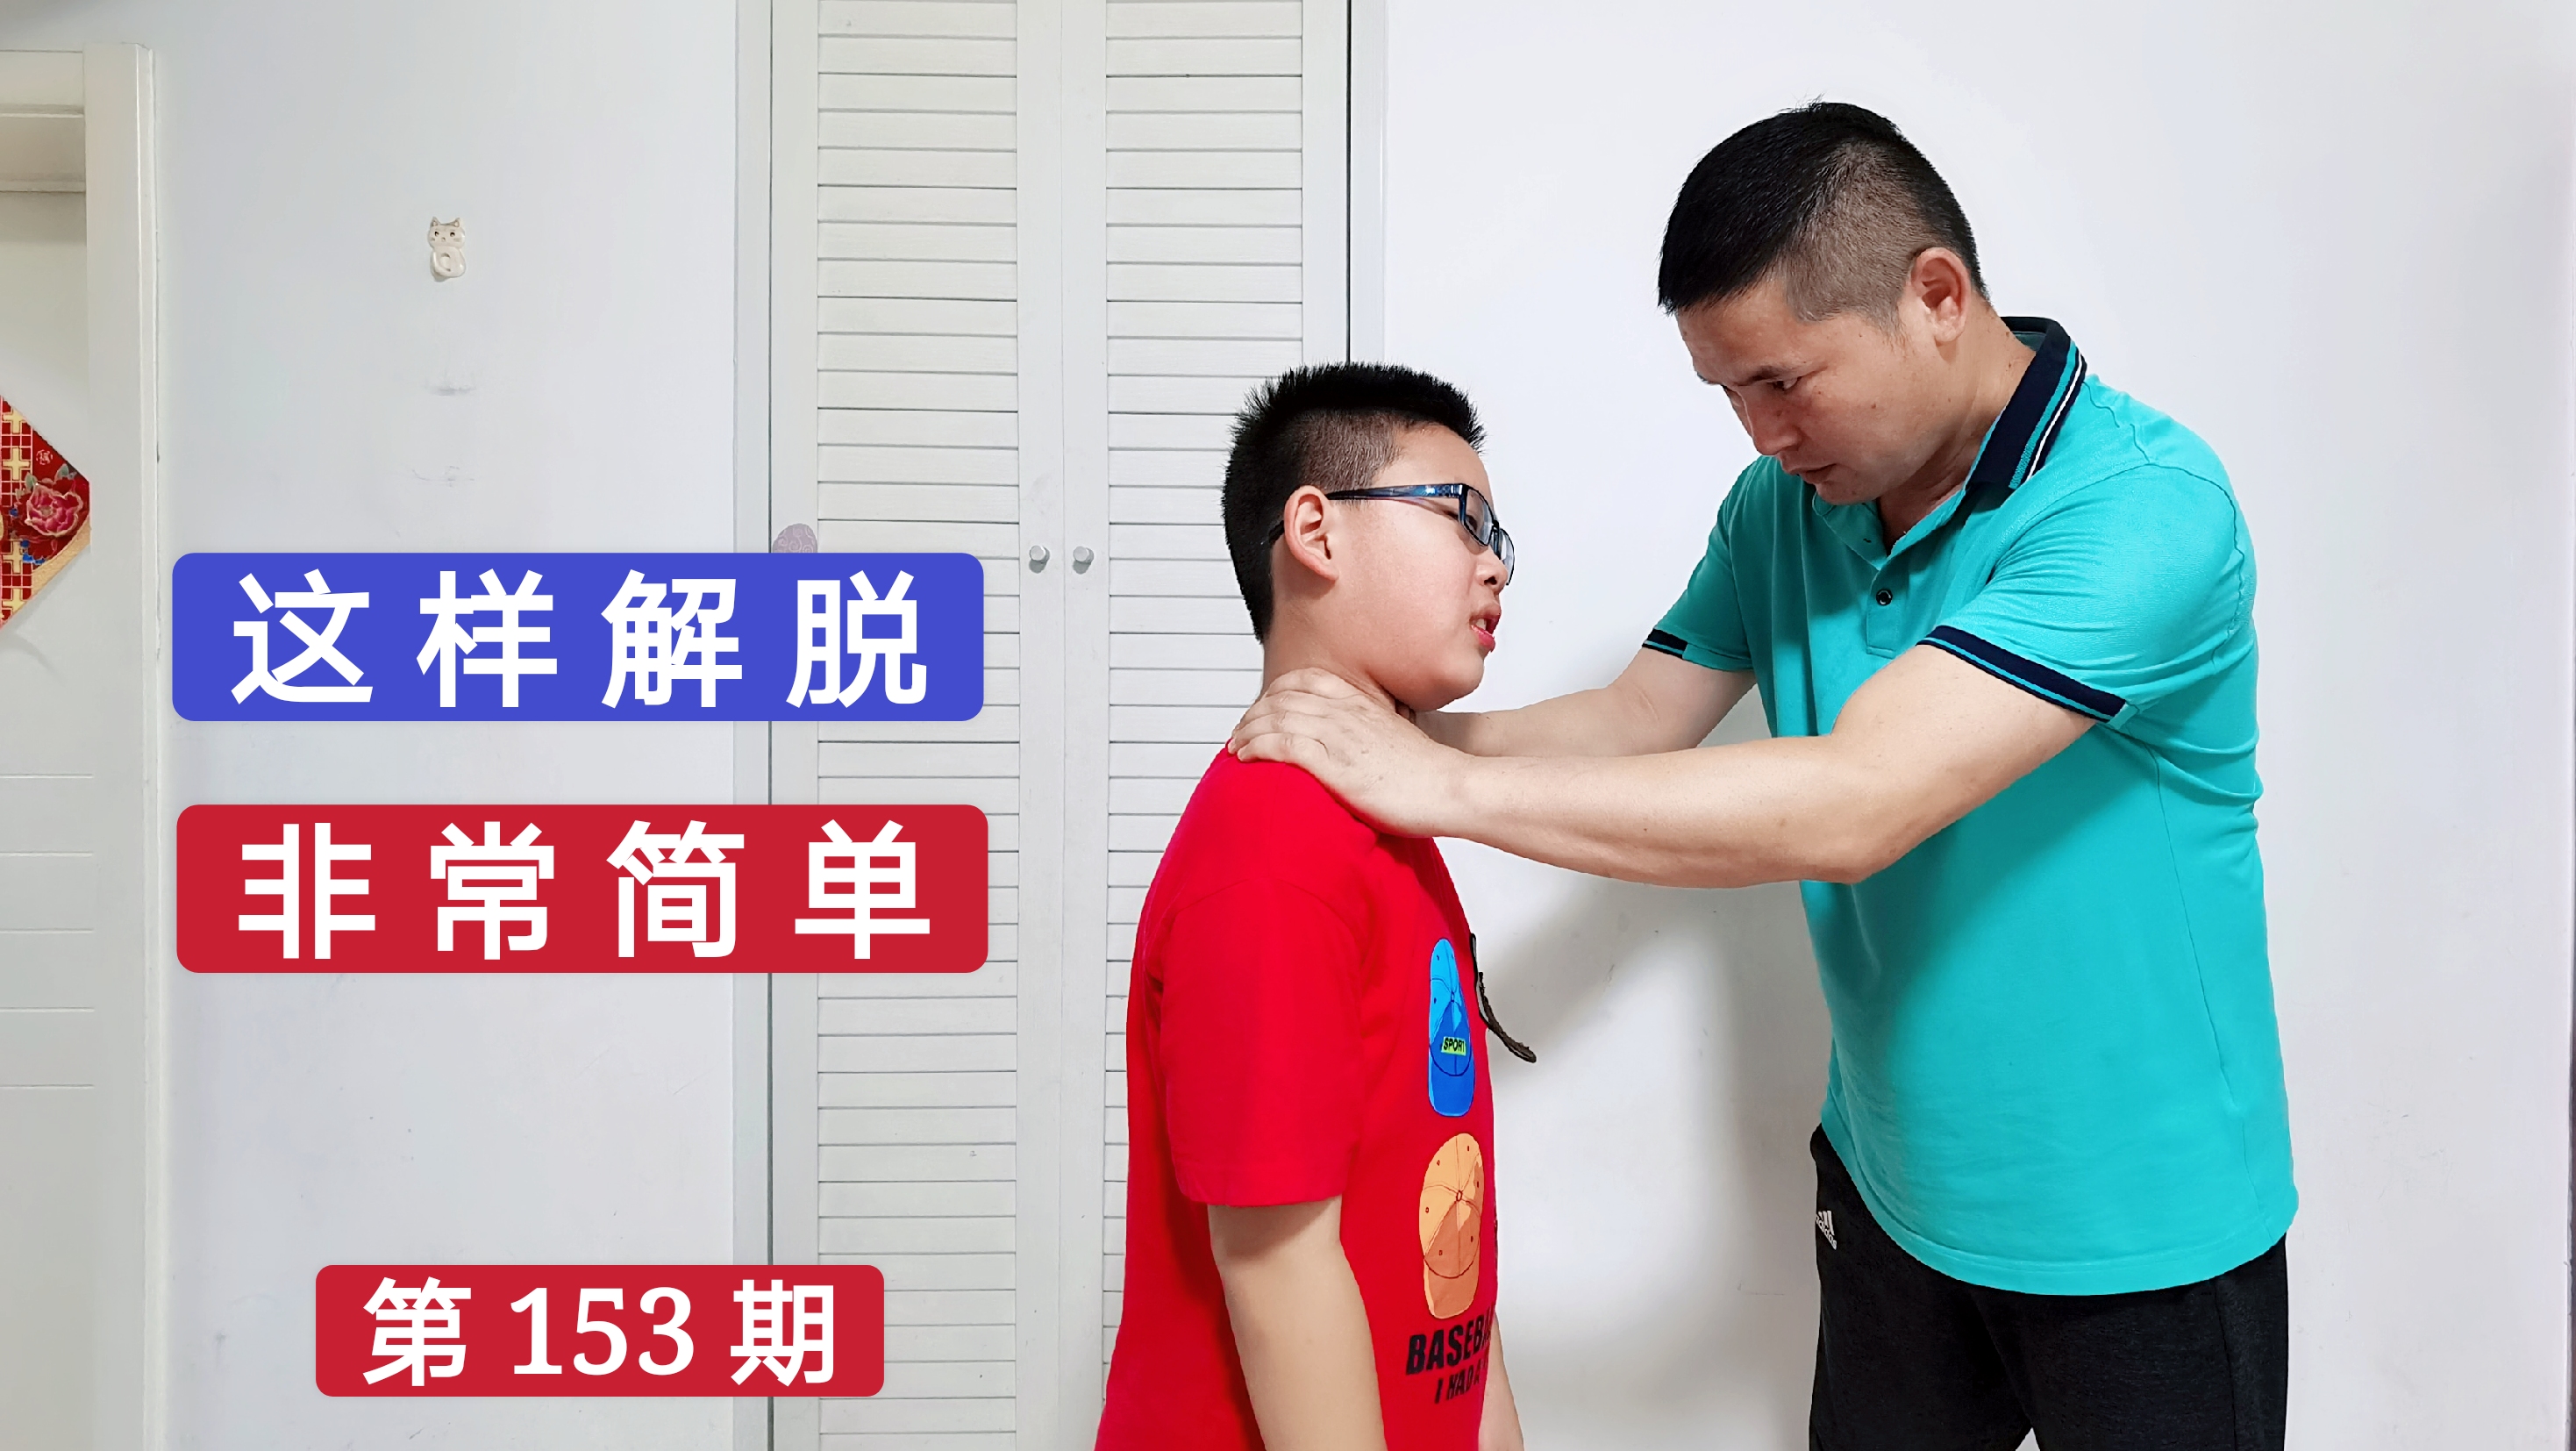 广州一男子当街抢婴儿 掐其脖子与警方对峙(图)_凤凰资讯